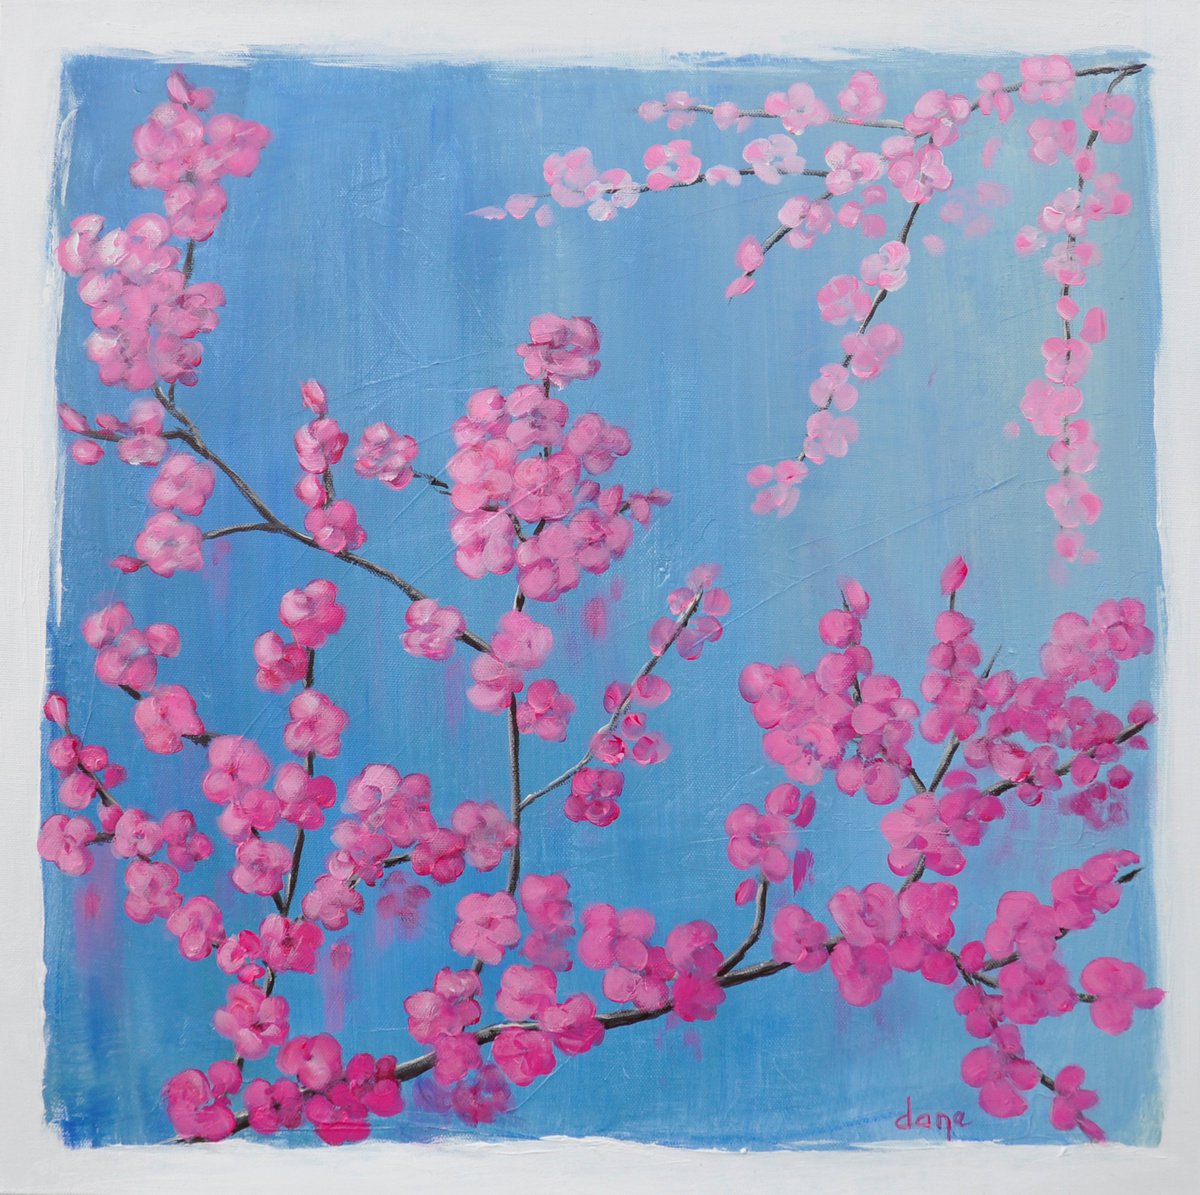 Flowering tree by Dane